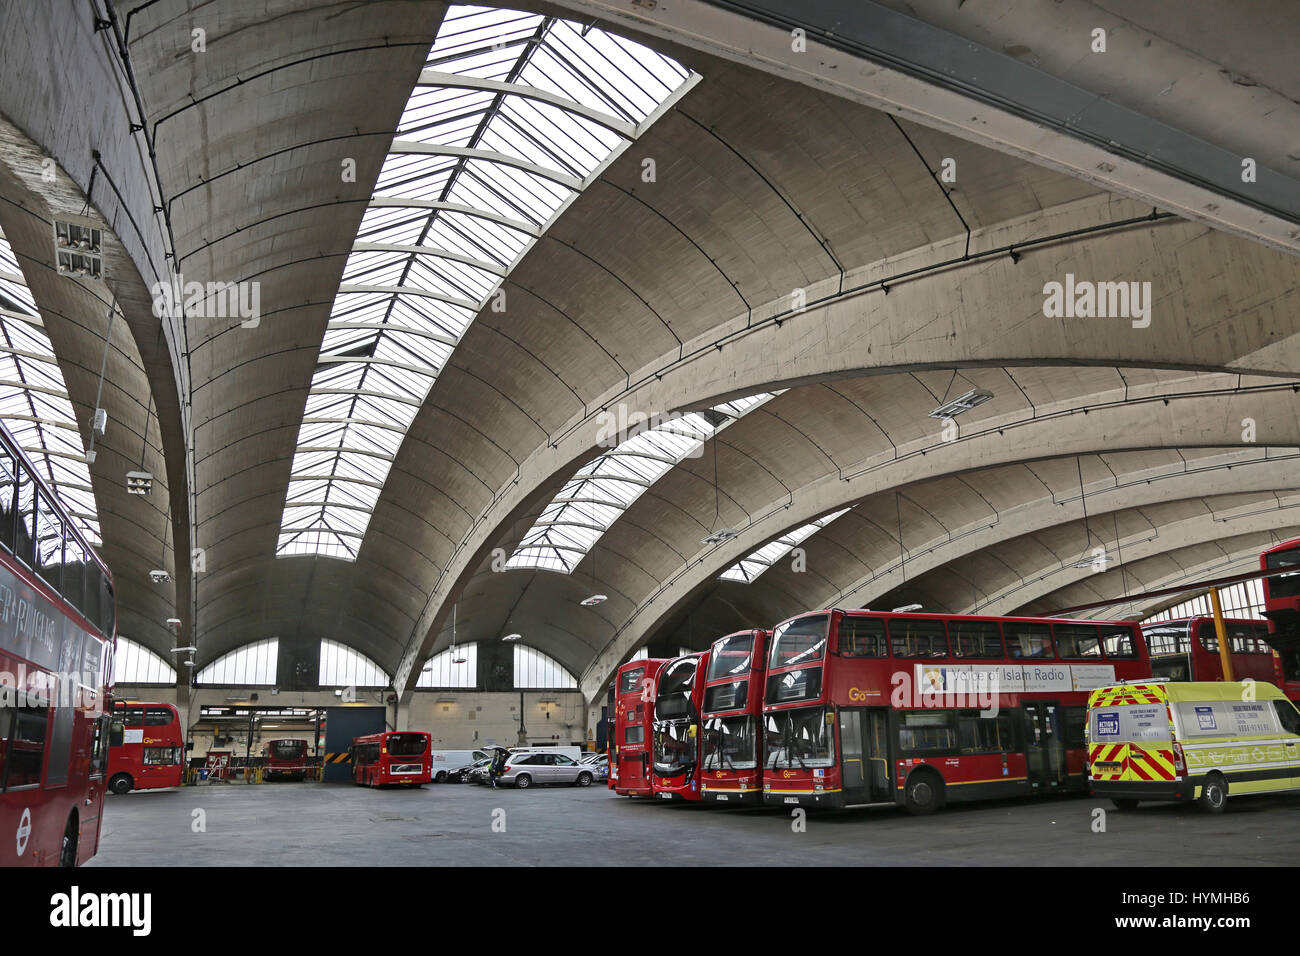 Stockwell Bus Garage, dans le sud de Londres, au Royaume-Uni. Le célèbre toit de béton s'étend sur 59m et a été le plus grand d'Europe lors de sa construction en 1952. Classé grade II maintenant. Banque D'Images